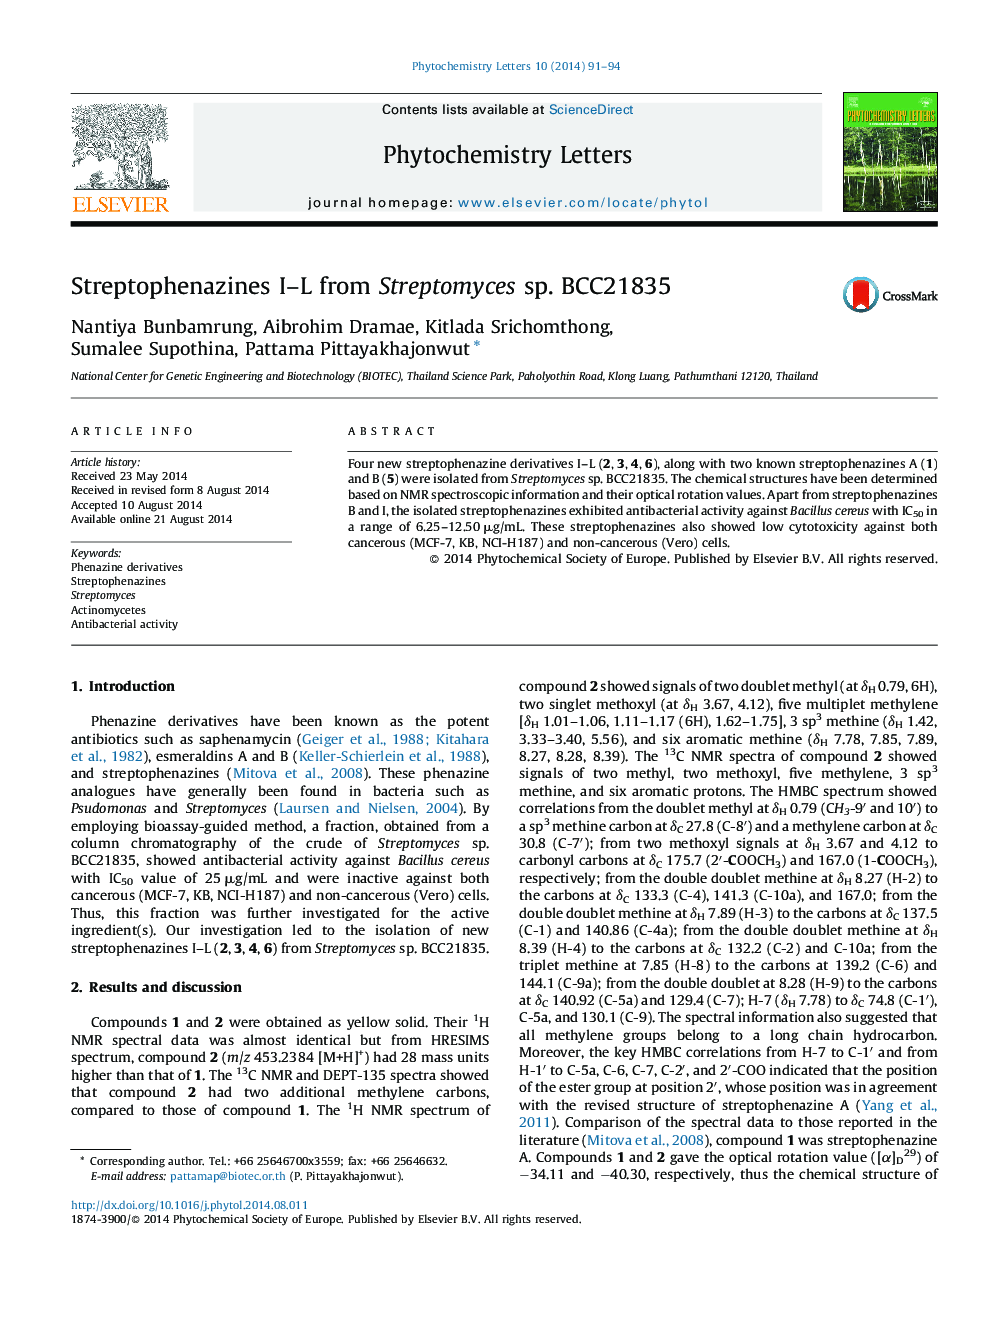 Streptophenazines I-L from Streptomyces sp. BCC21835